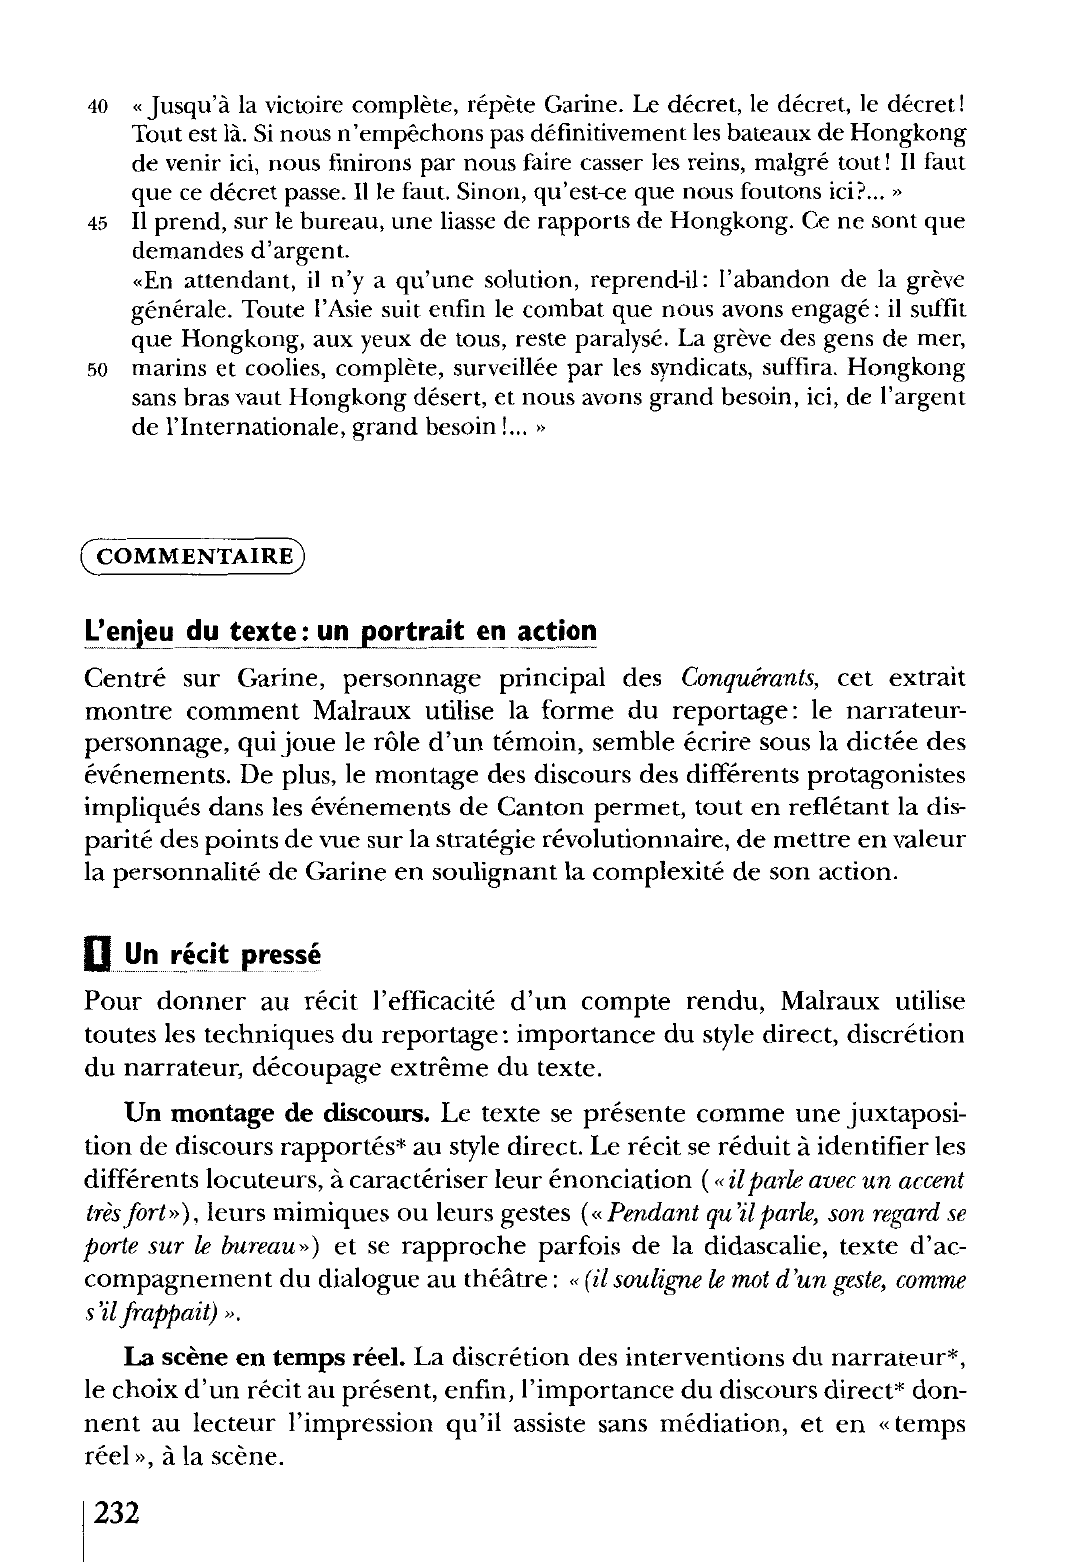 Prévisualisation du document Les Conquérants  Les Conquérants, IIe partie, Le Livre de Poche (Grasset), pp. 212-215. Commentaire